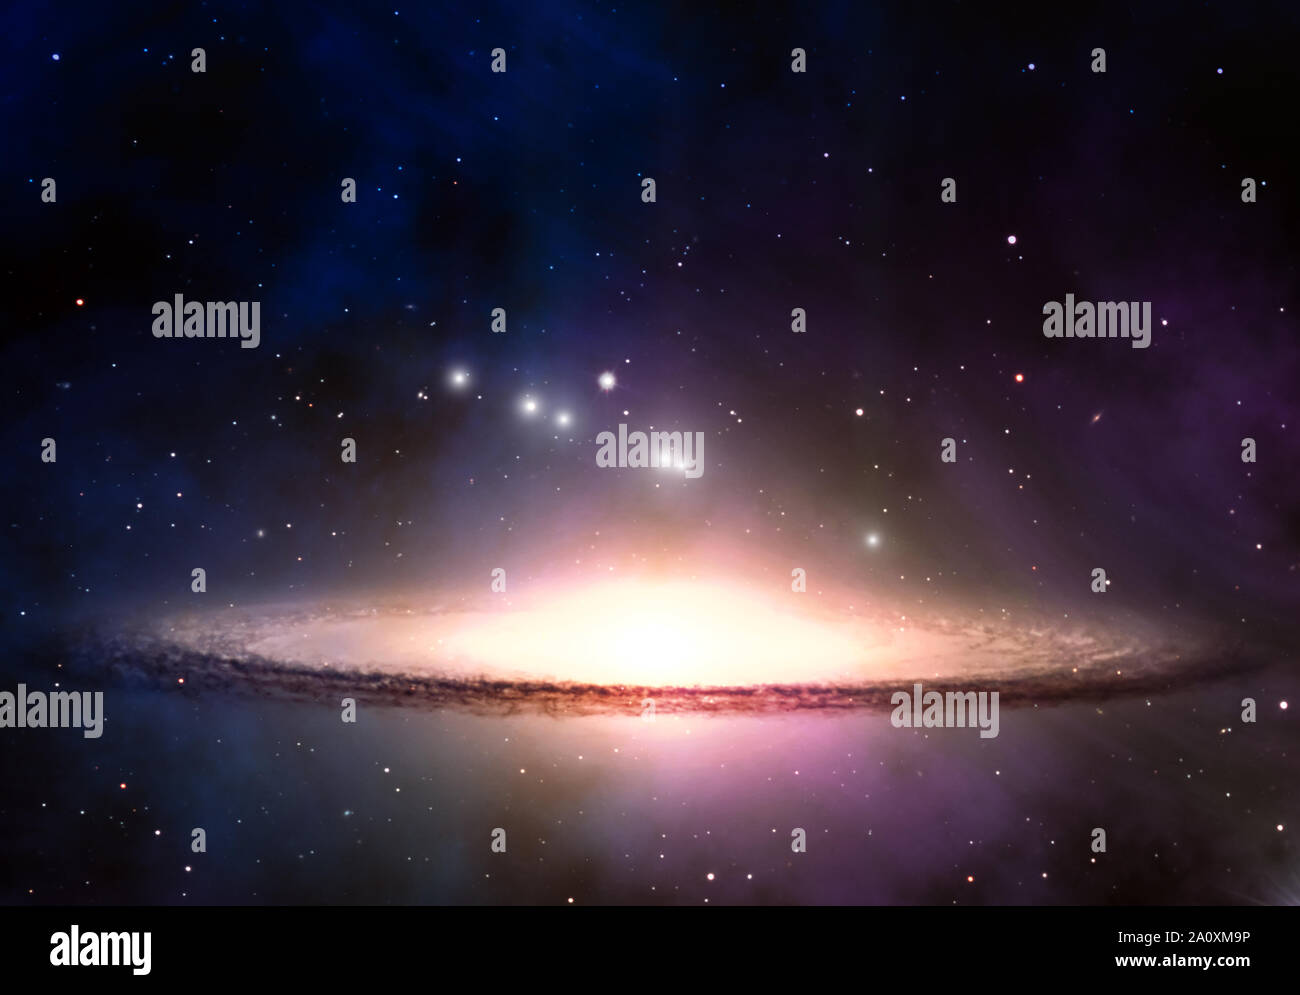 Galaxy, brillante estrella nebulosa y nubes de polvo en el espacio ultraterrestre. Cosmos futurista universo paisaje. Foto de stock